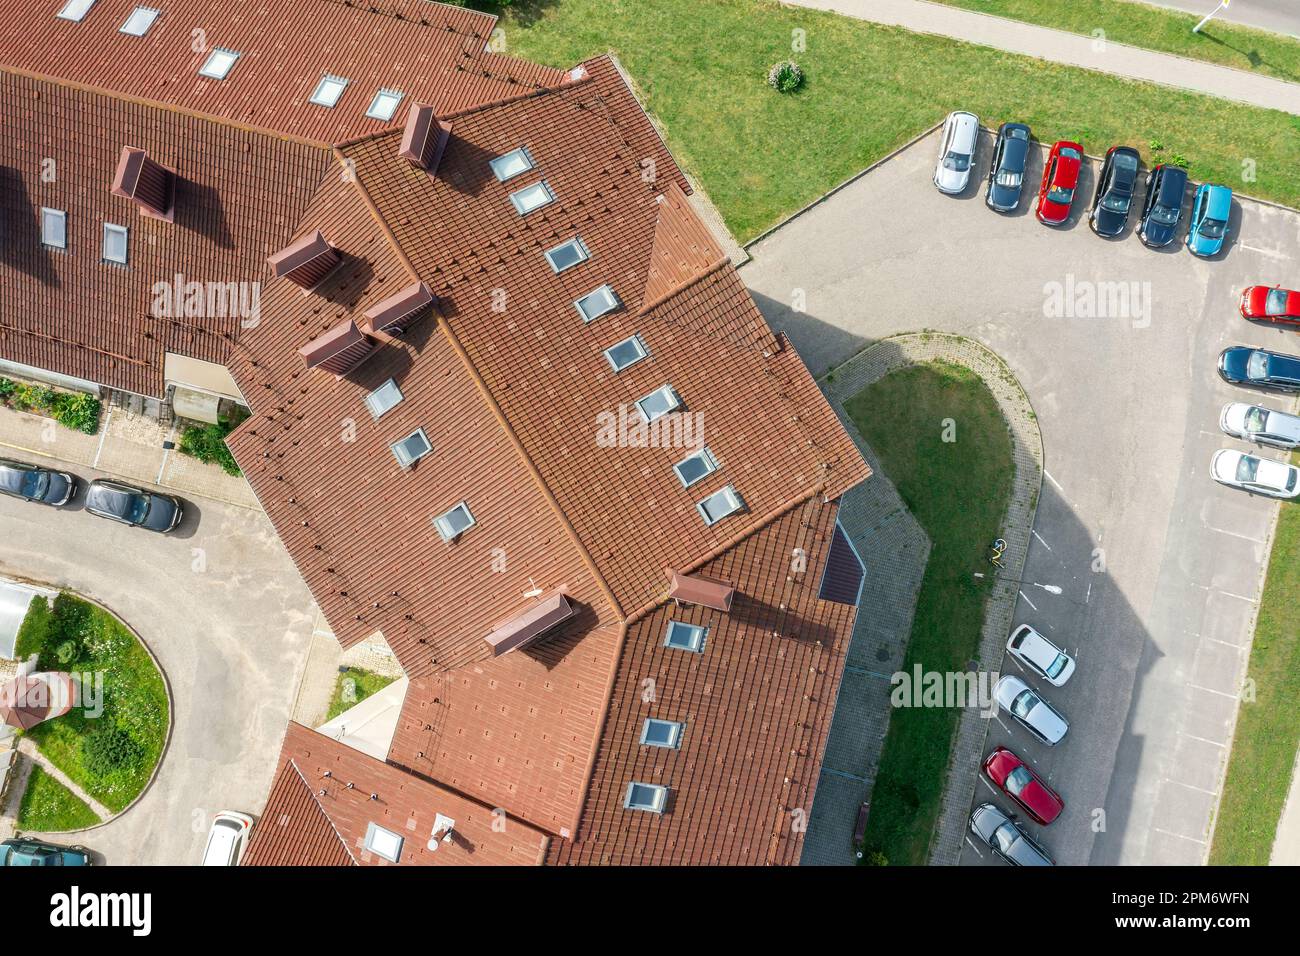 vue aérienne des maisons résidentielles avec des toits rouges dans une banlieue tranquille et rue avec des voitures garées. Banque D'Images